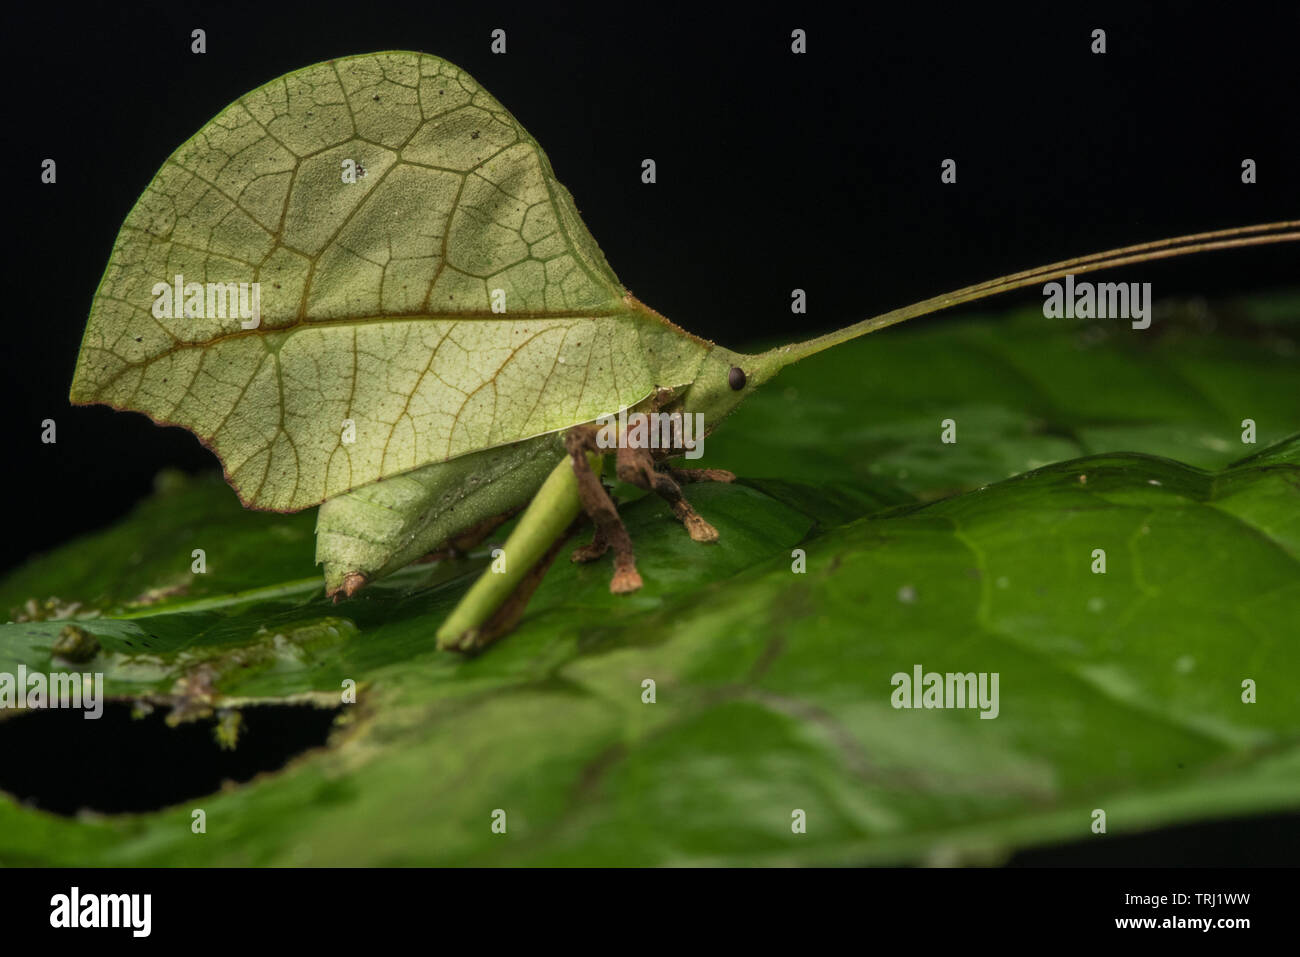 A leaf mimic katydid hiding in plain sight on a leaf in the Amazon rainforest in Yasuni national park, Ecuador. Stock Photo